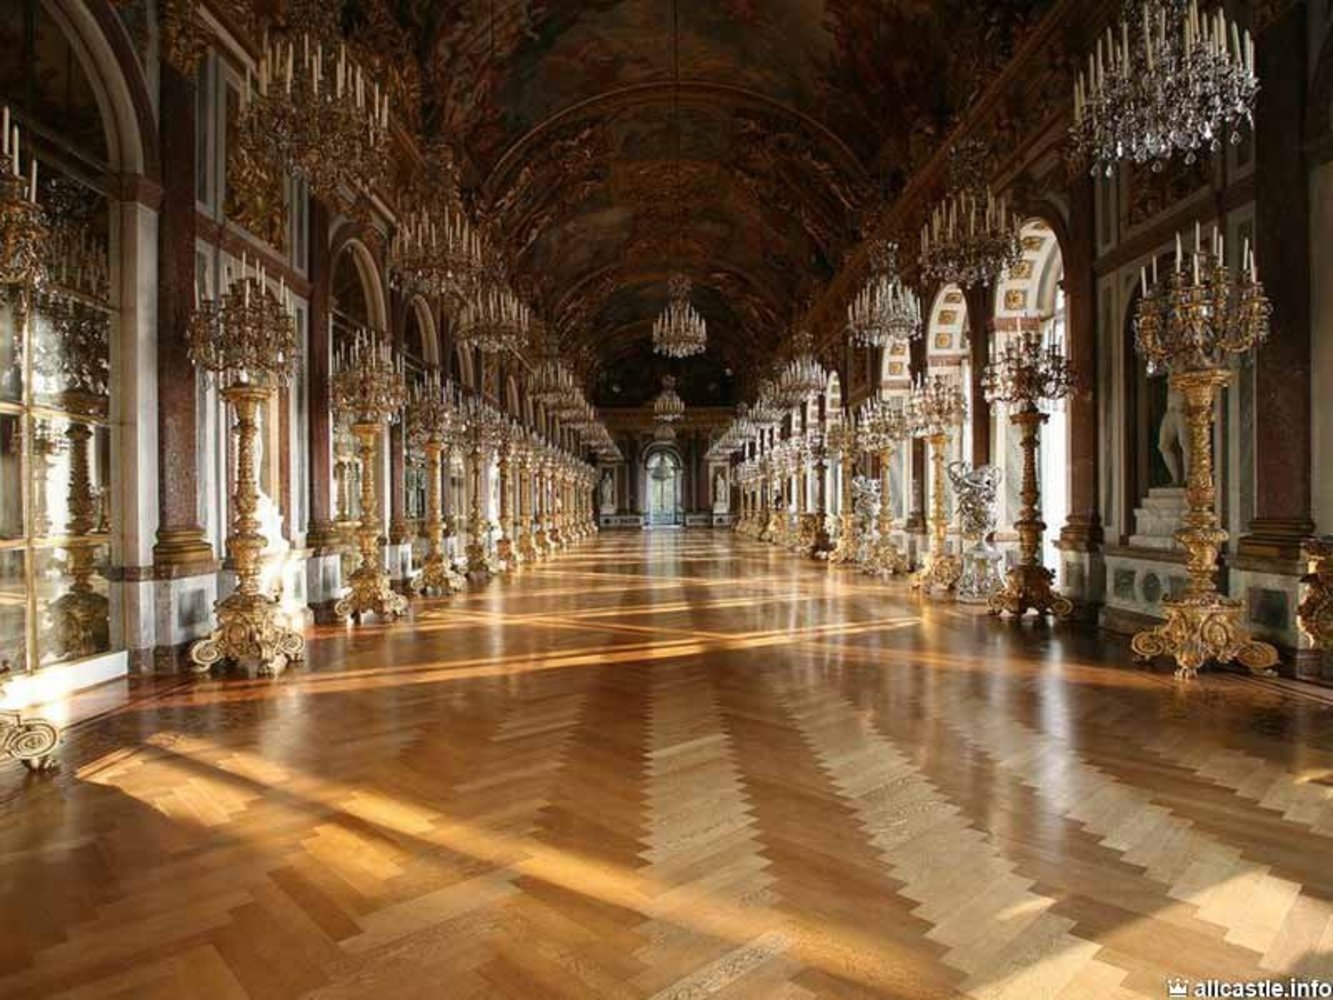 Hall o. Версаль зеркальная галерея Версальского дворца. Версальский дворец бальный зал. Баварский Версаль дворец Херренкимзее. Зеркальный зал Версальского дворца.